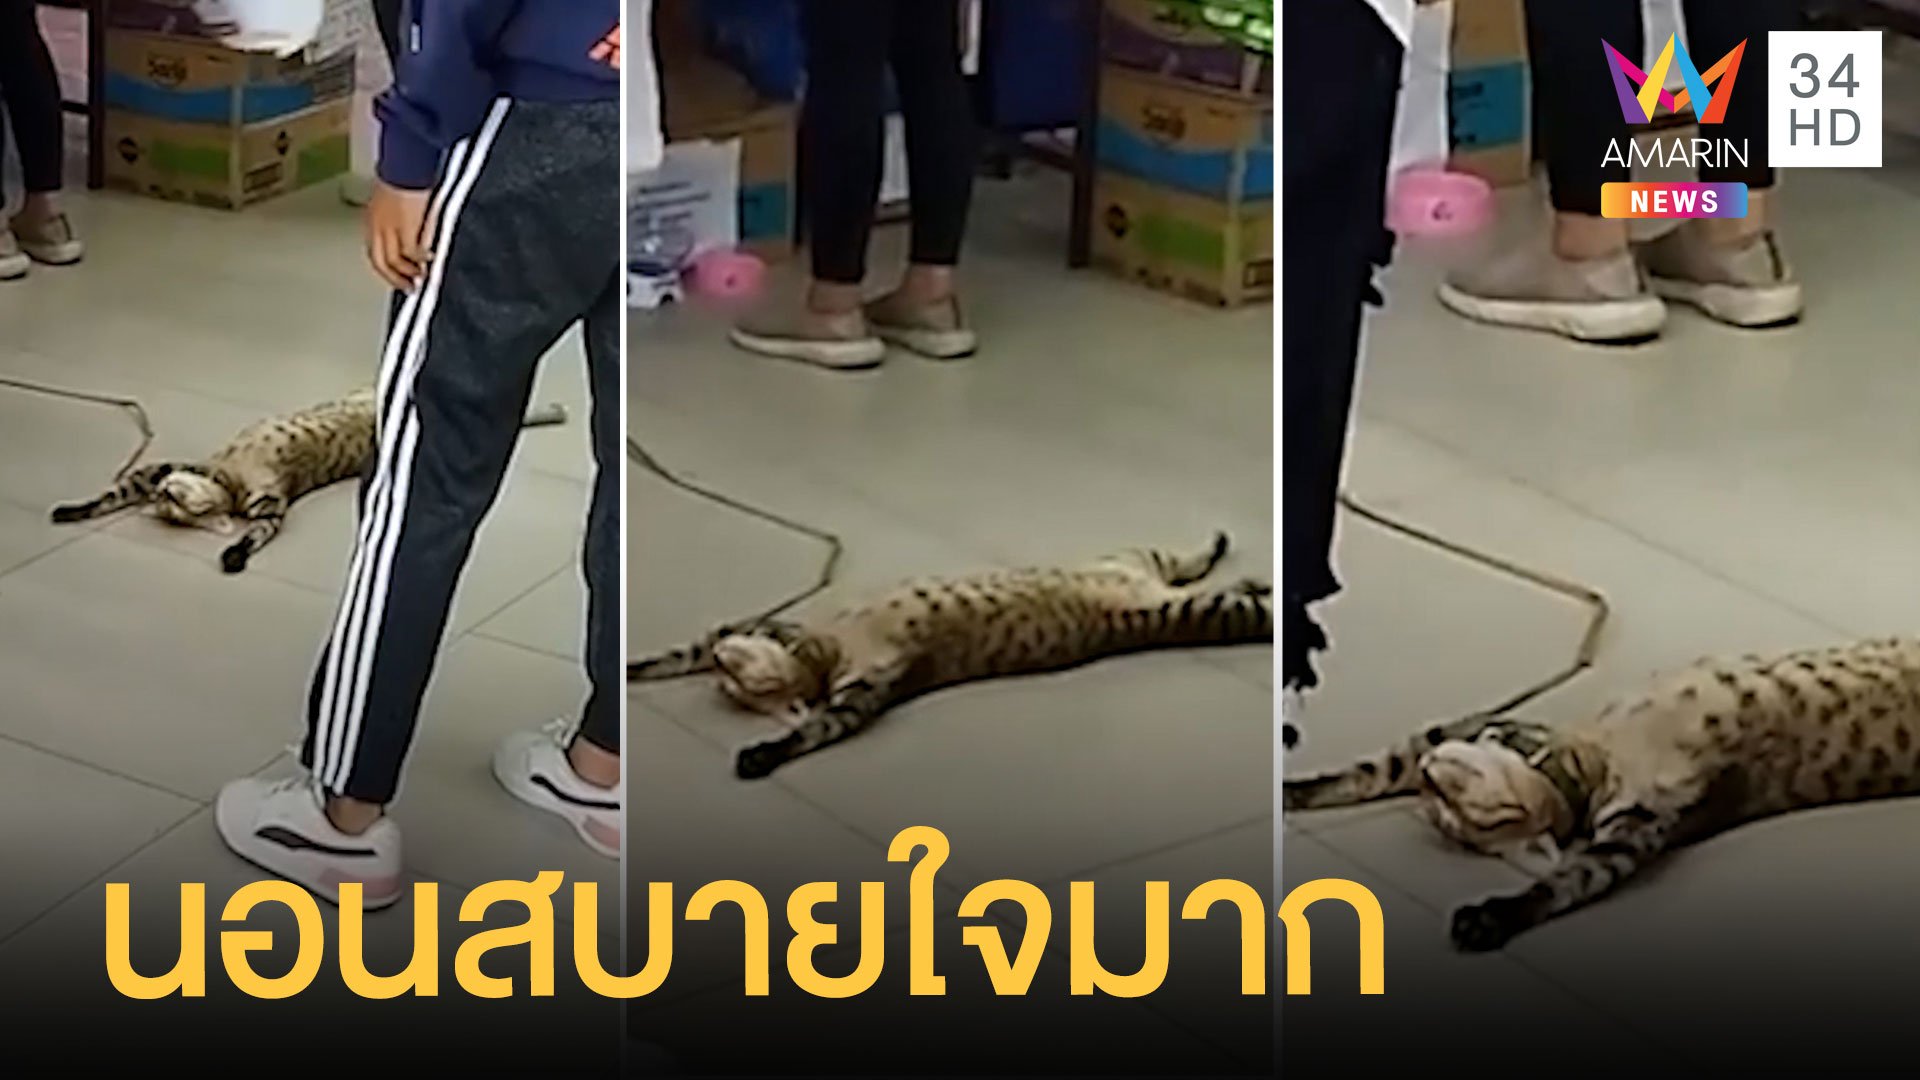 น้องแมวนอนแผ่สบายใจมากกลางร้านอาหารสัตว์ | ข่าวอรุณอมรินทร์ | 22 มิ.ย. 64 | AMARIN TVHD34